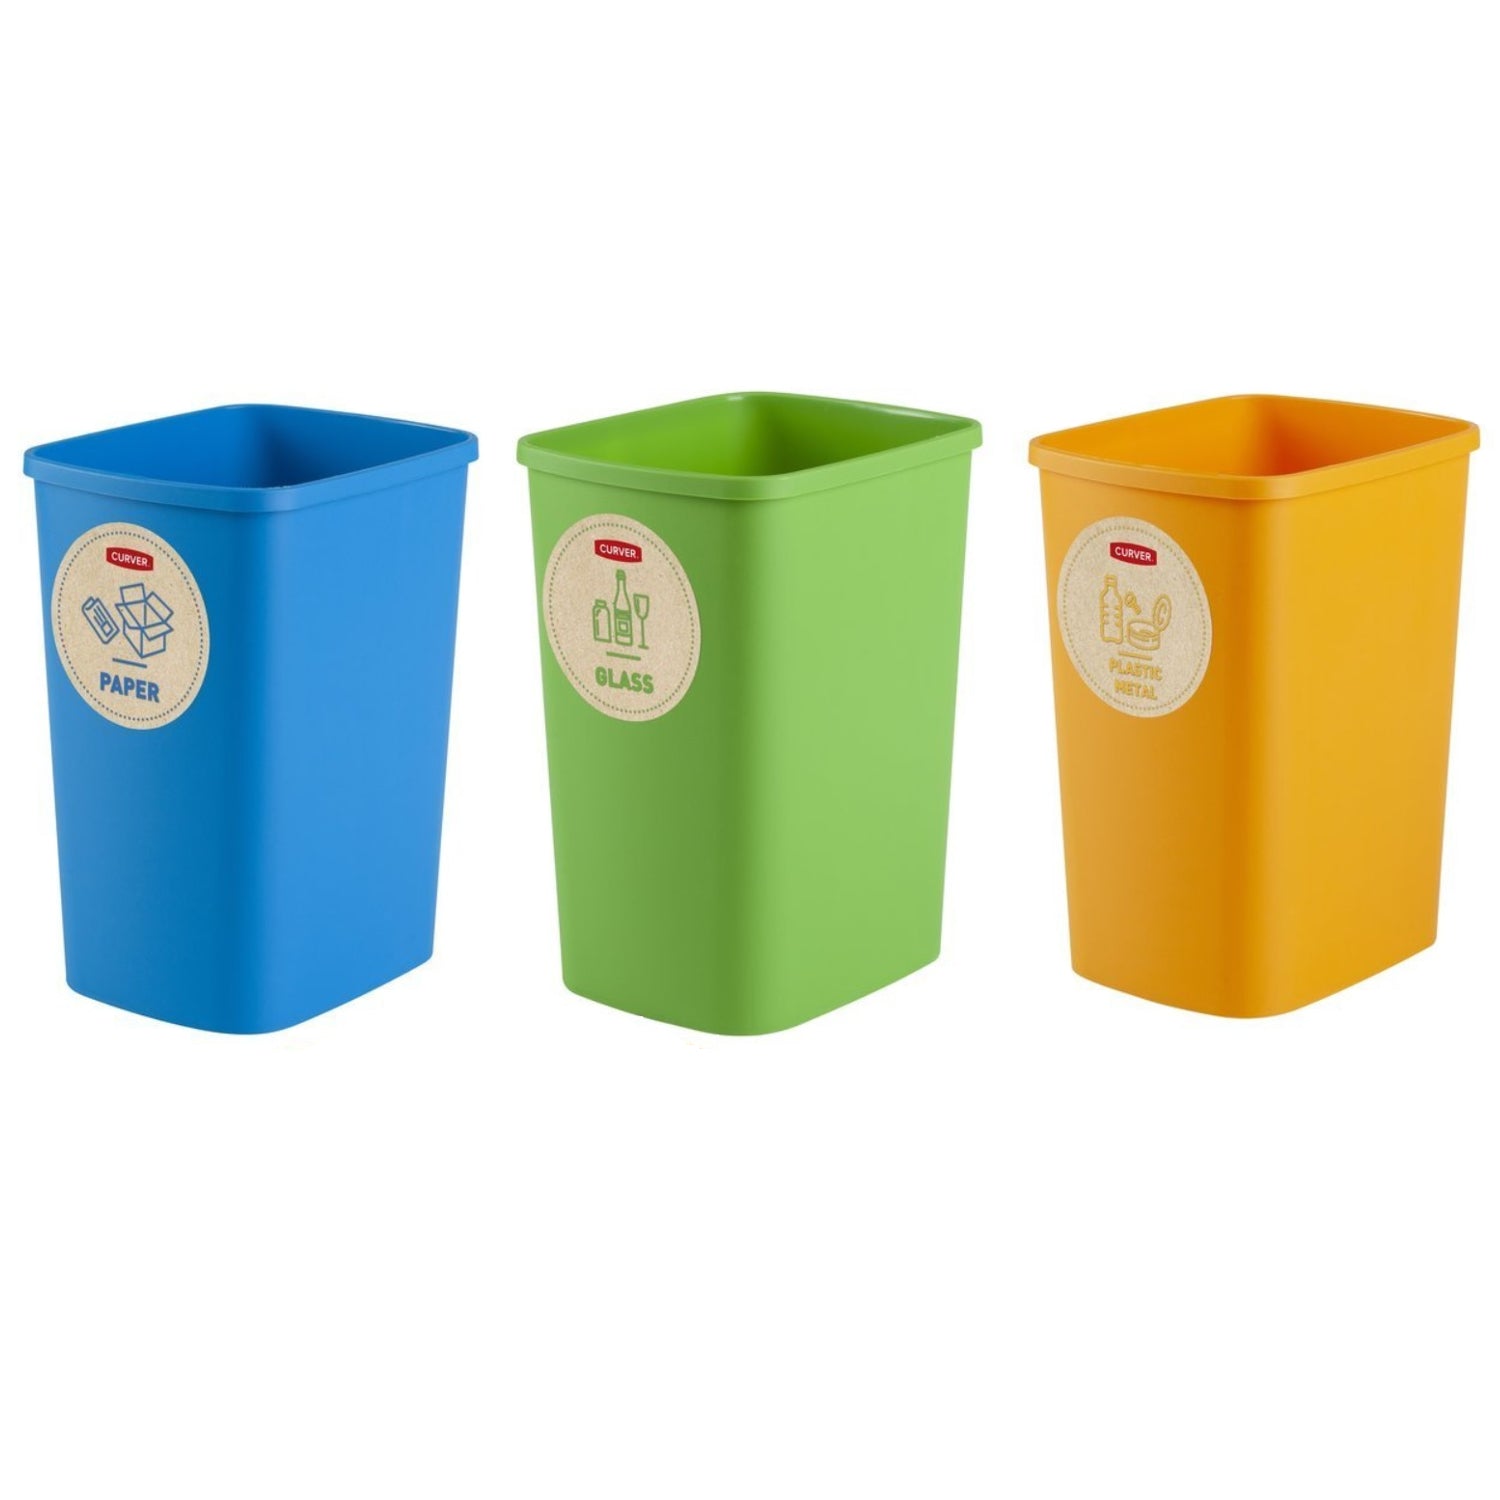 Cubo de basura Eco idea Plástico